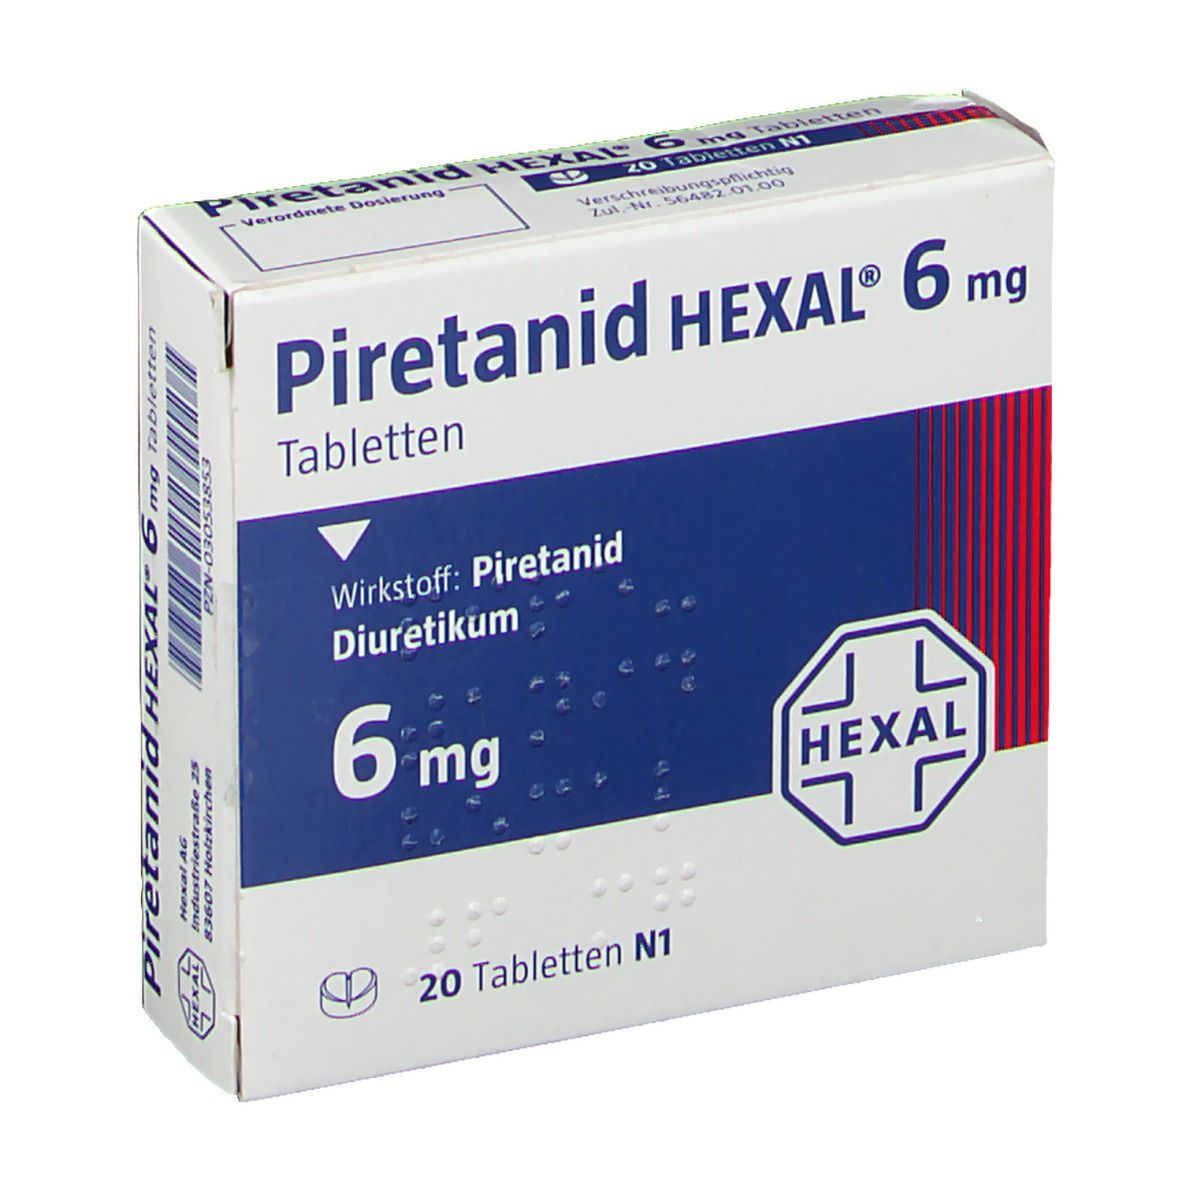 Piretanid HEXAL® 6 mg